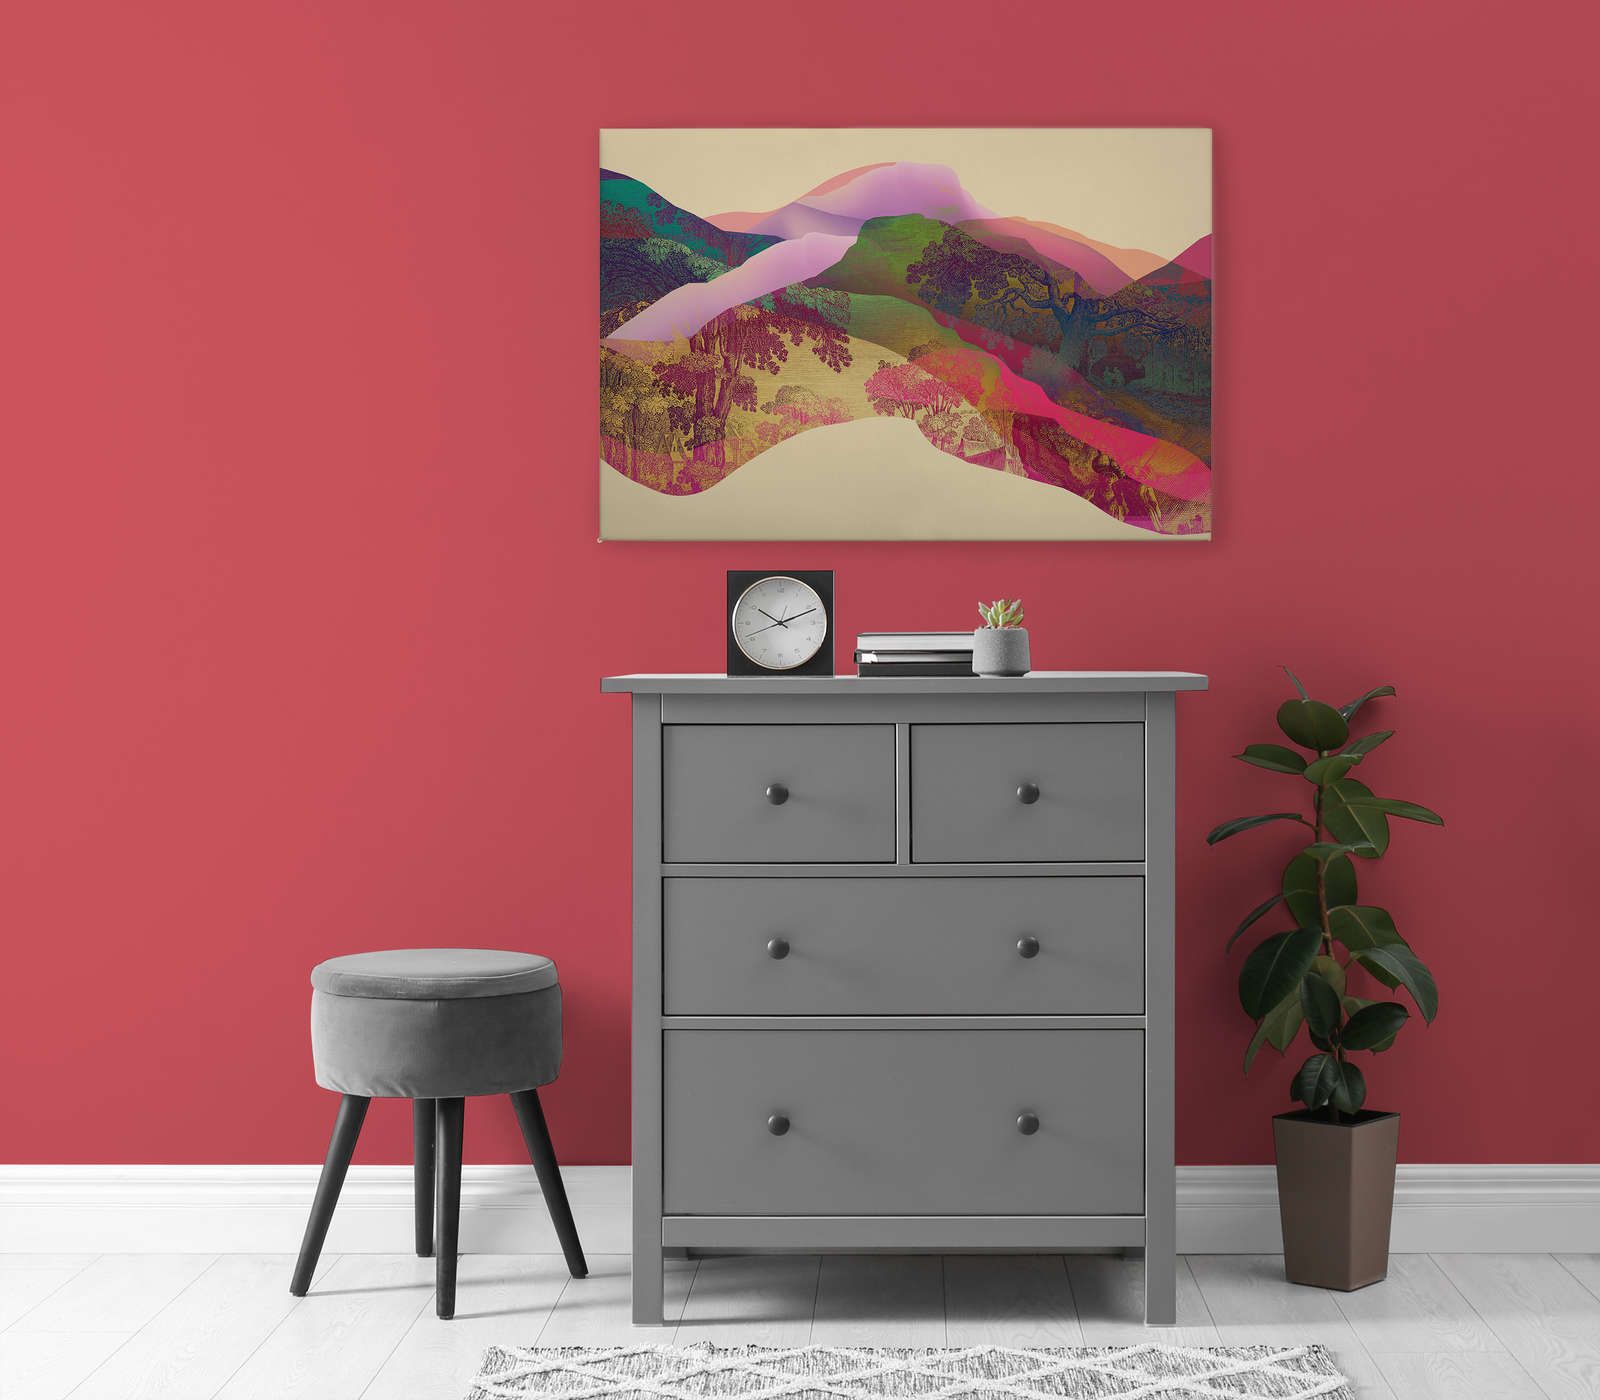             Magic Mountain 2 - Toile Paysage de montagne abstrait - 0,90 m x 0,60 m
        